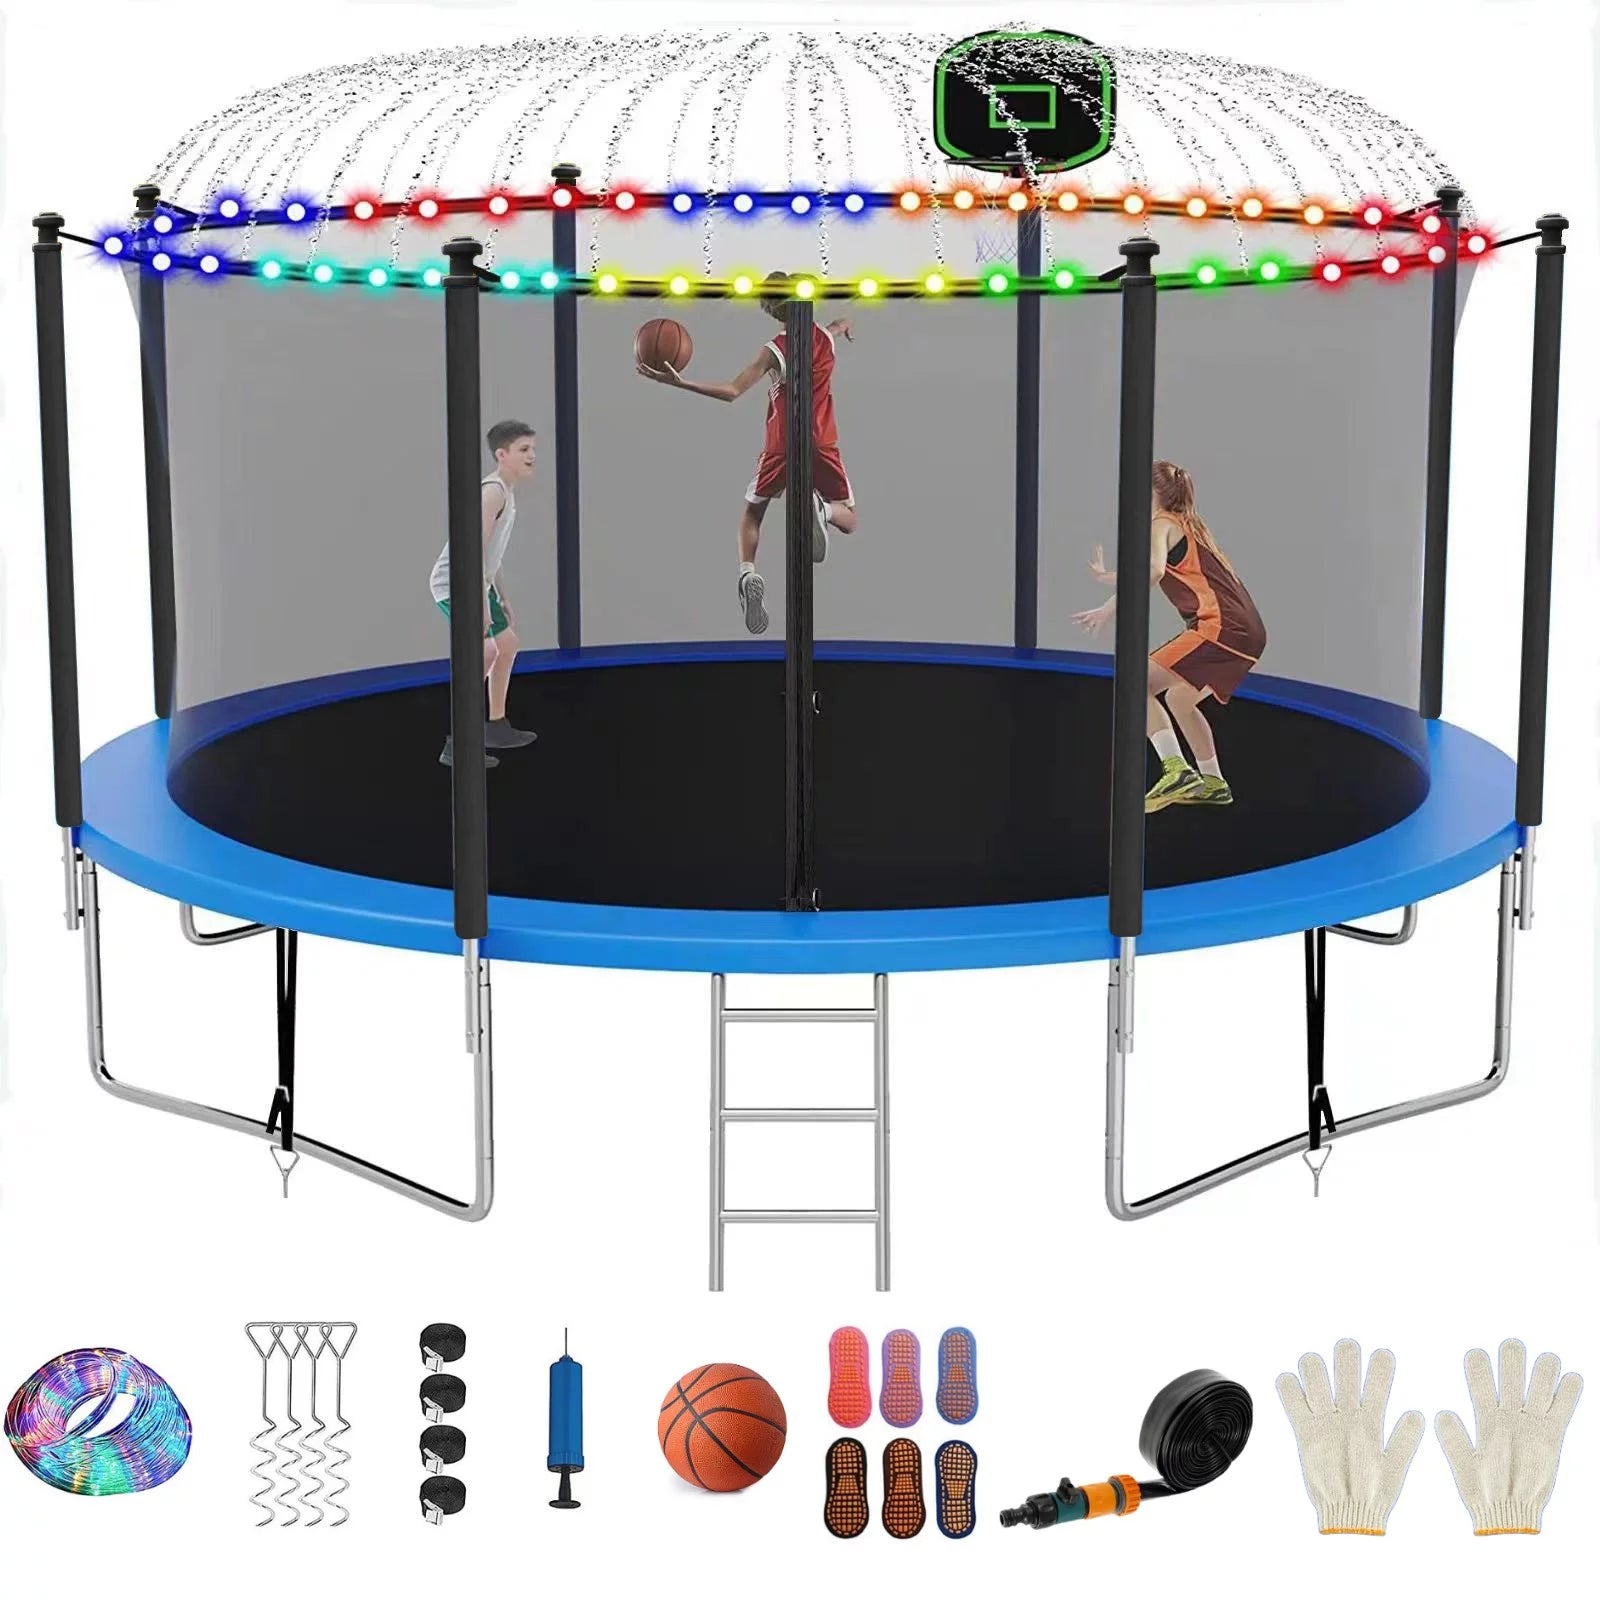 Trampoline with Net, Basketball Hoop, Sprinkler, & LED Lights